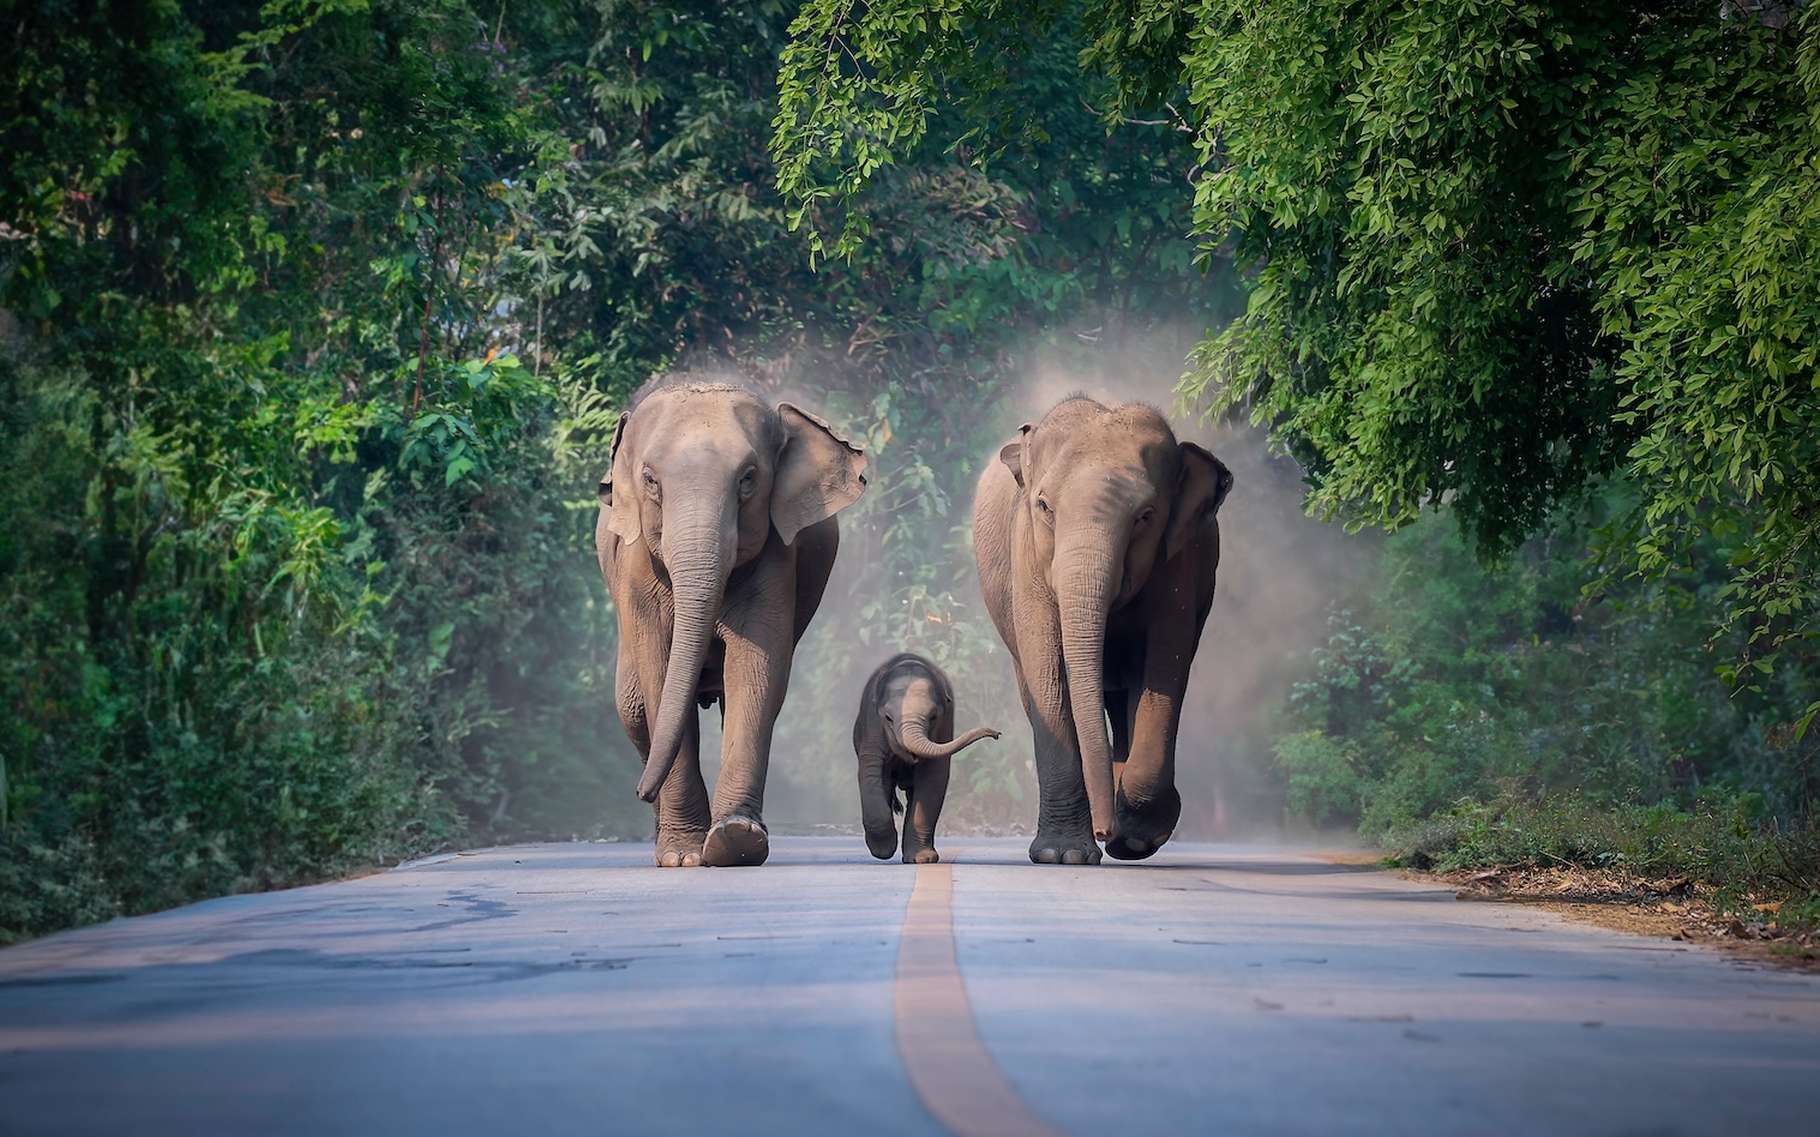 Les éléphants d'Asie ne font pas que pleurer les morts, ils les enterrent aussi